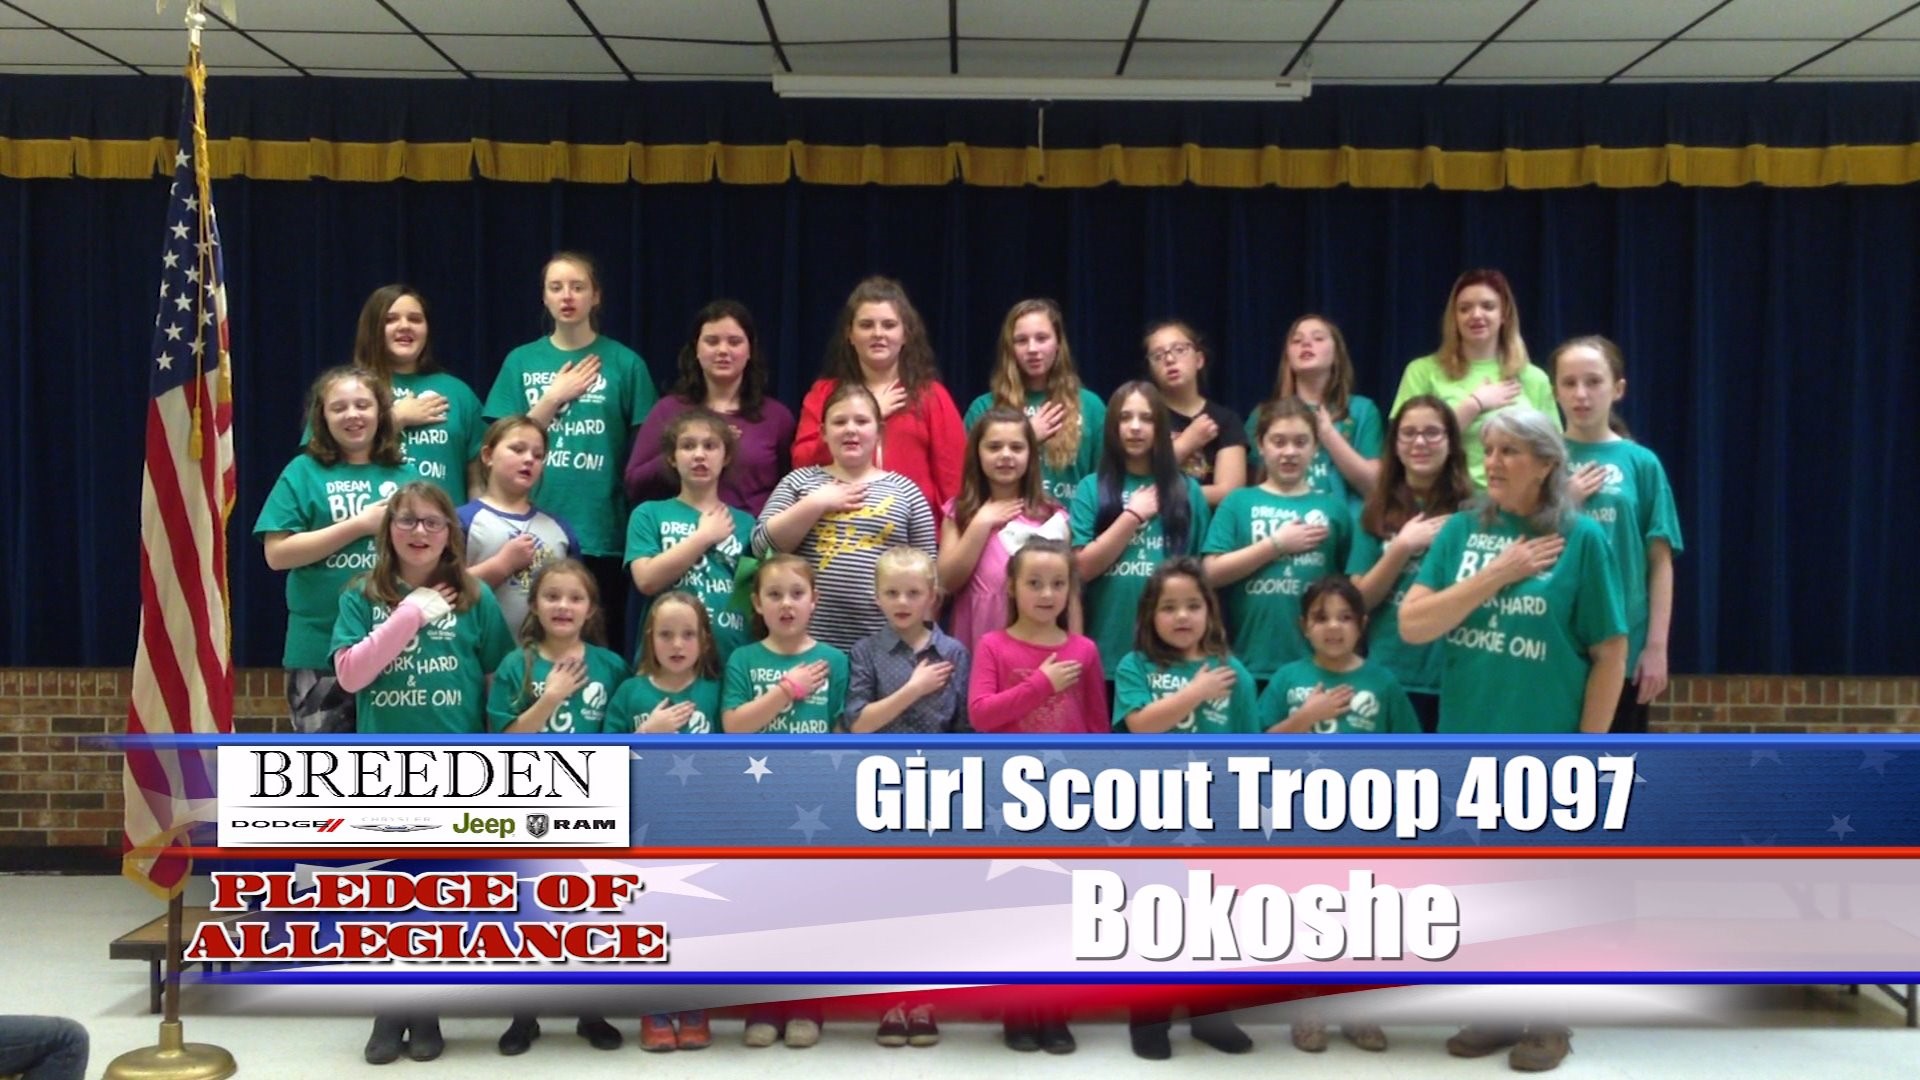 Girl Scout Troop 4097  Bokoshe